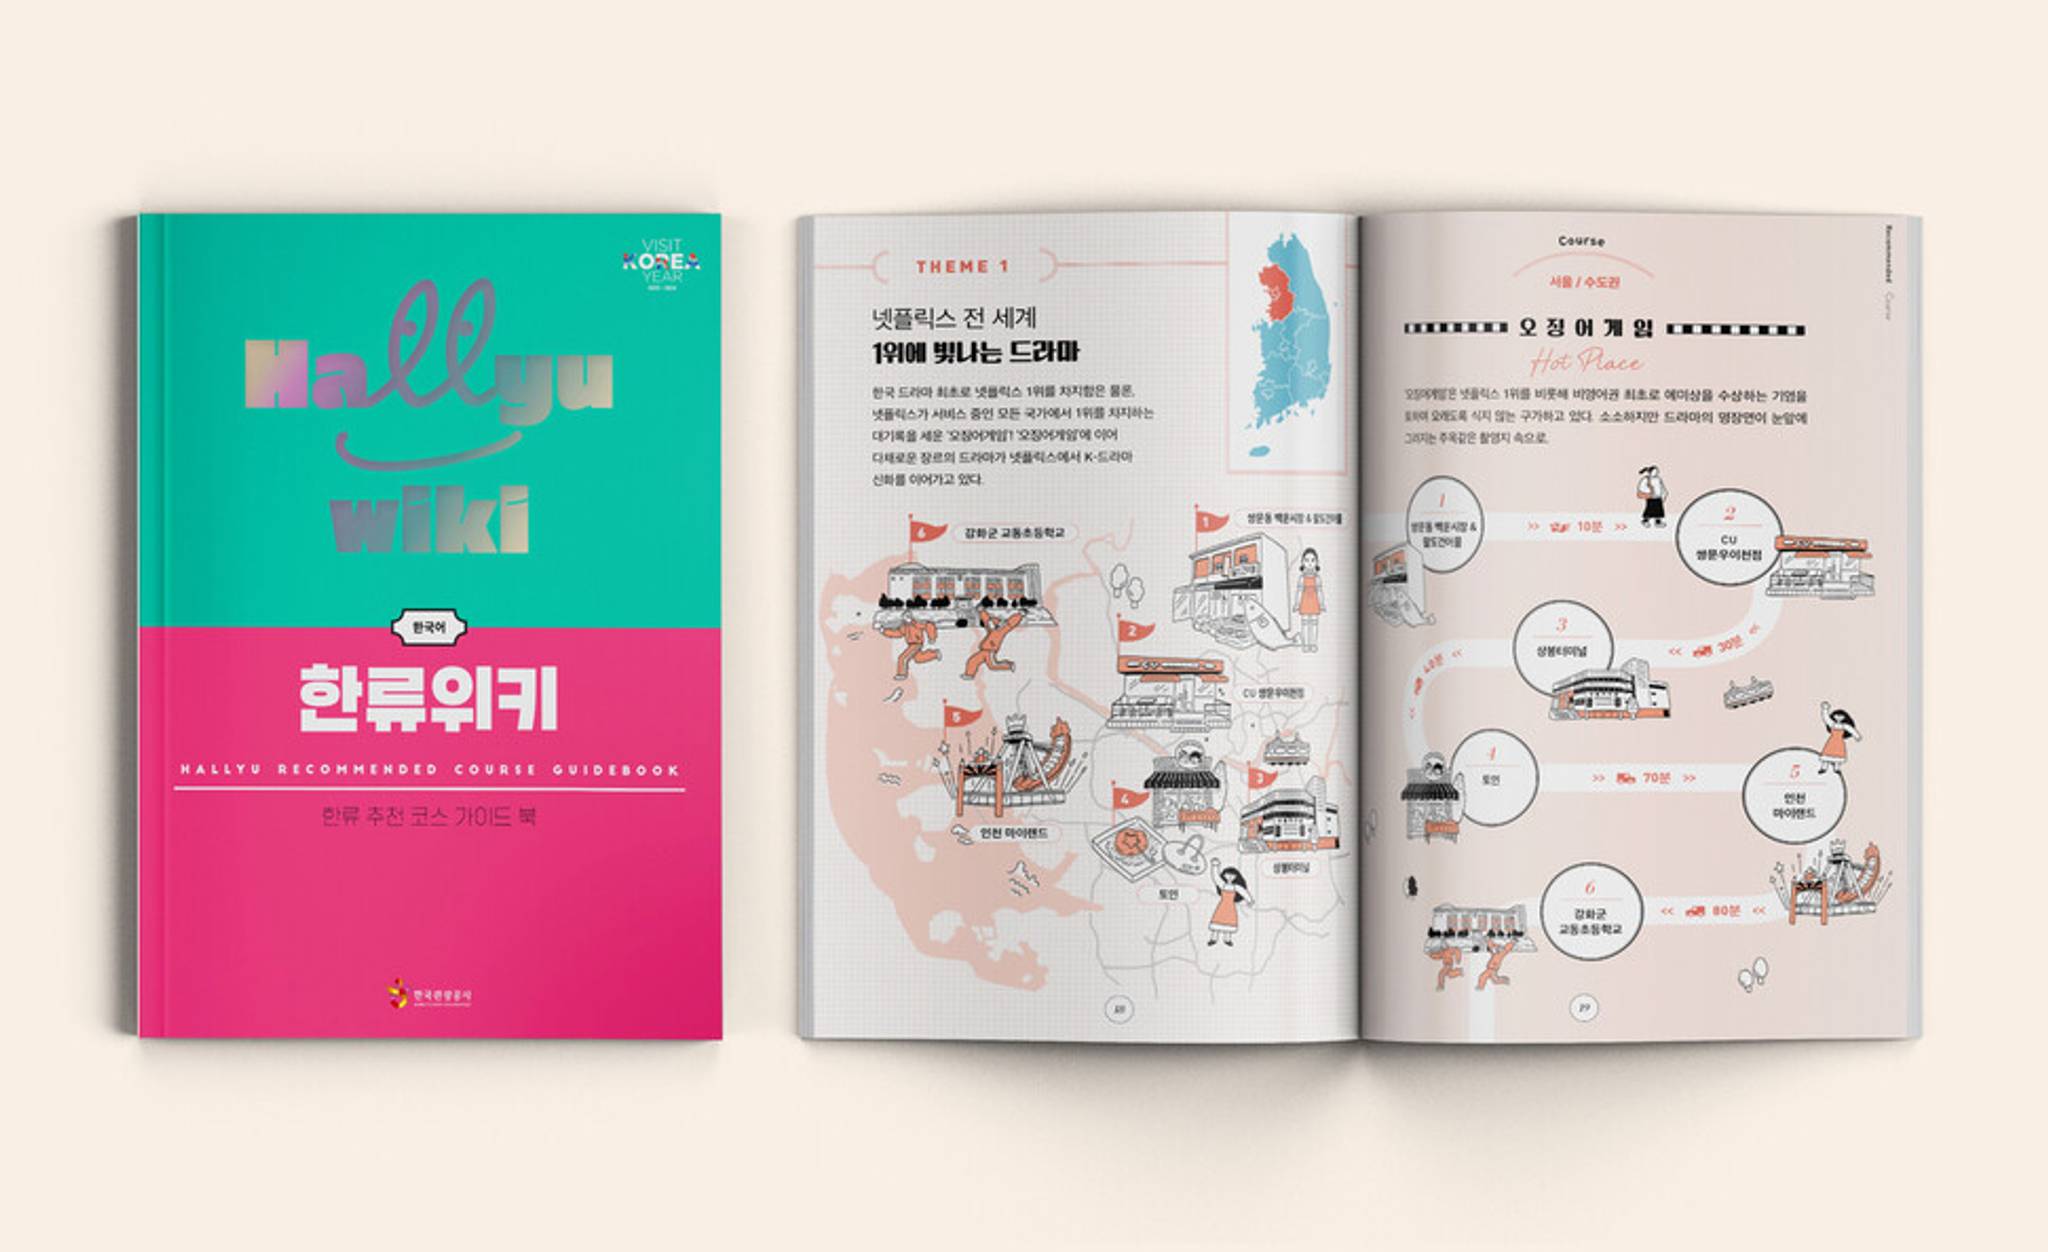 Hallyu tourism guides encourage fan-led Korean travel